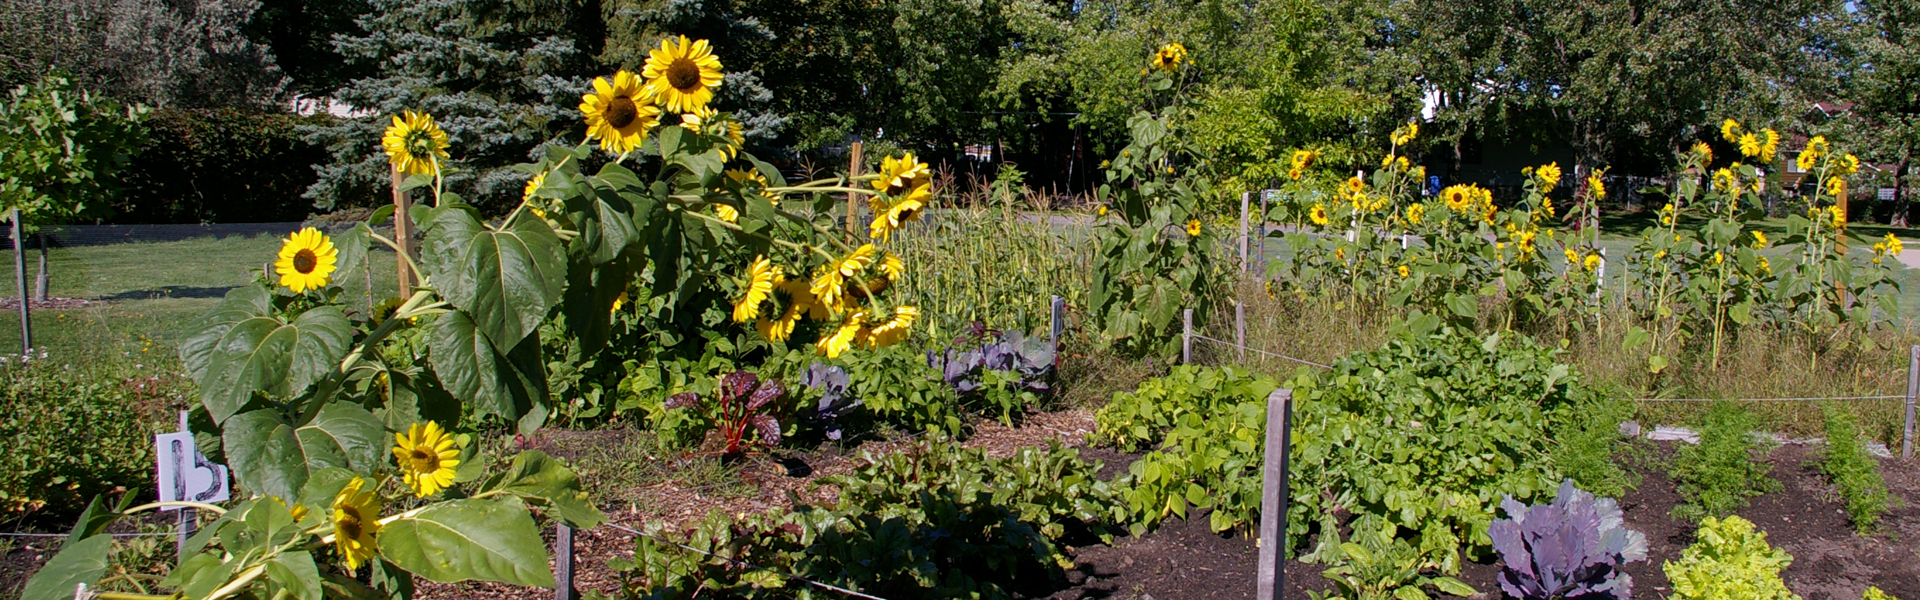 Jardins communautaires - Fleurs et plantes